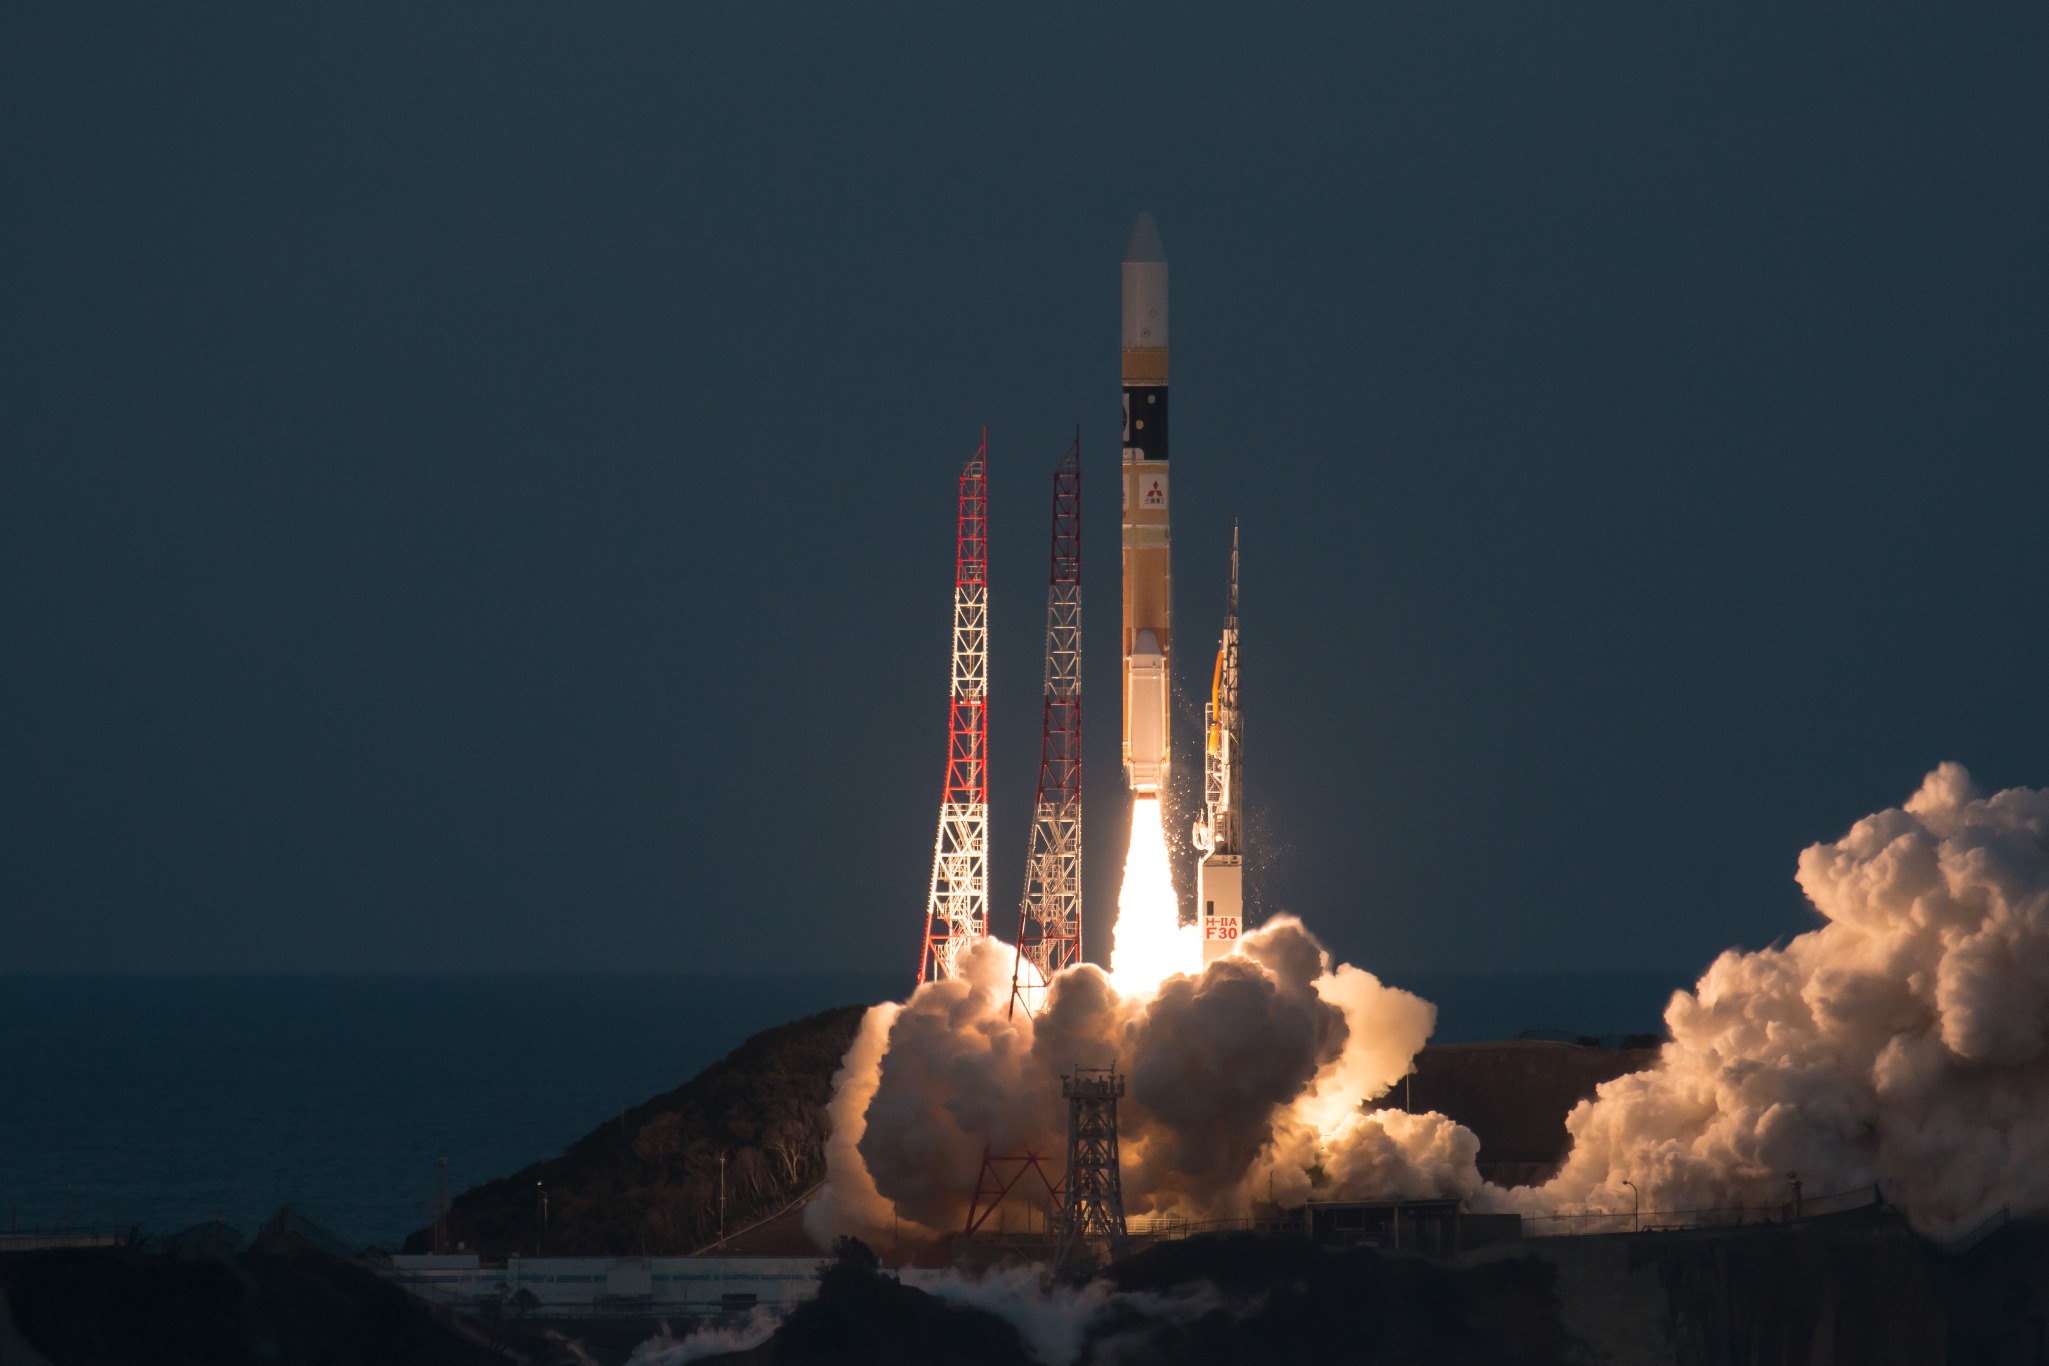 Mission d'astronomie ASTRO-H - Fusée H-2A - Tanegashima 17 février 2016 - JAXA